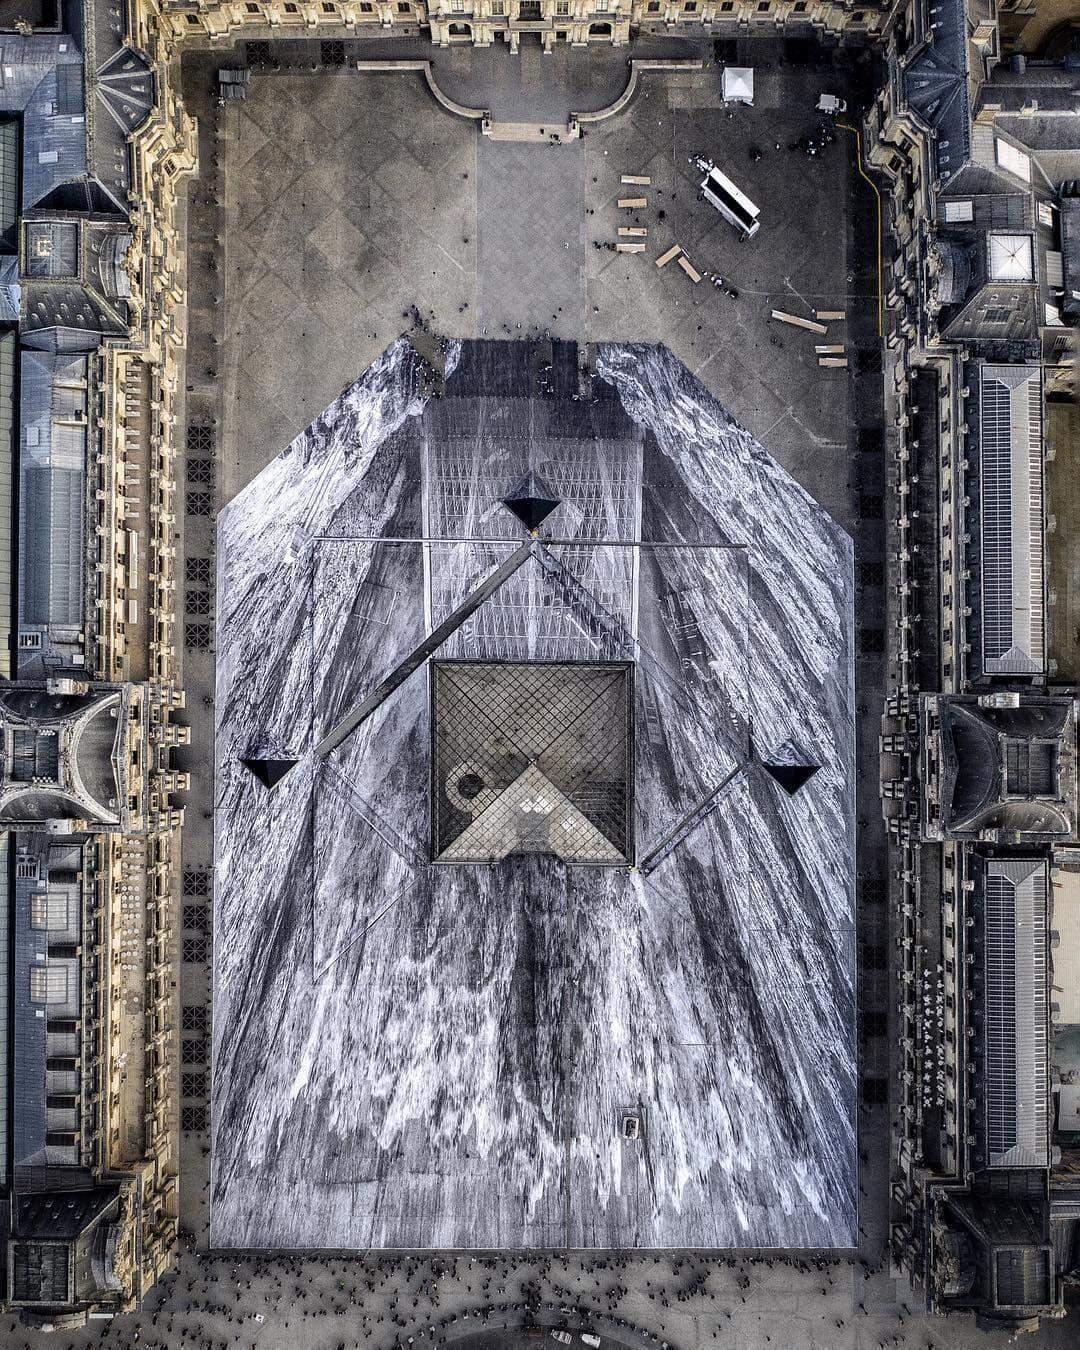 Pirâmide do Louvre comemora 30 anos com instalação do artista urbano JR